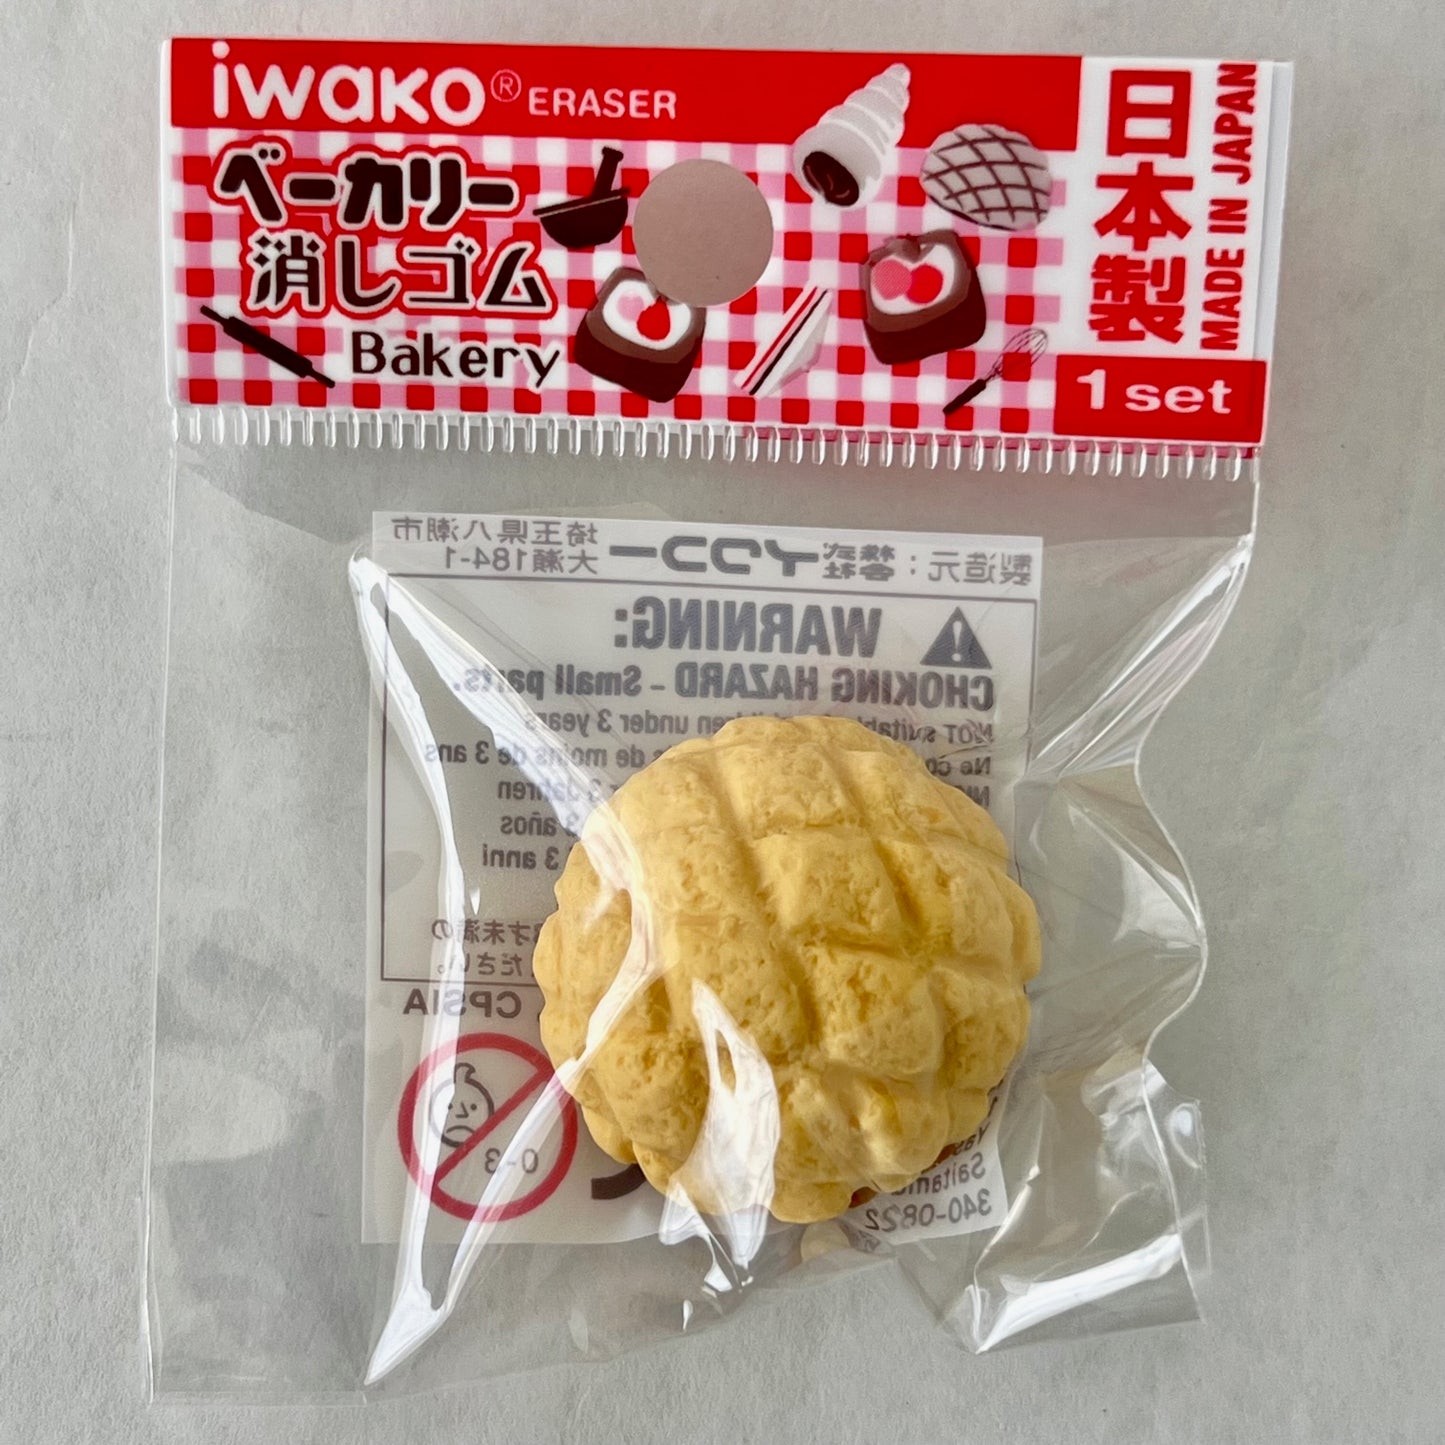 382721 IWAKO CAFE BAKERY ERASERS-30